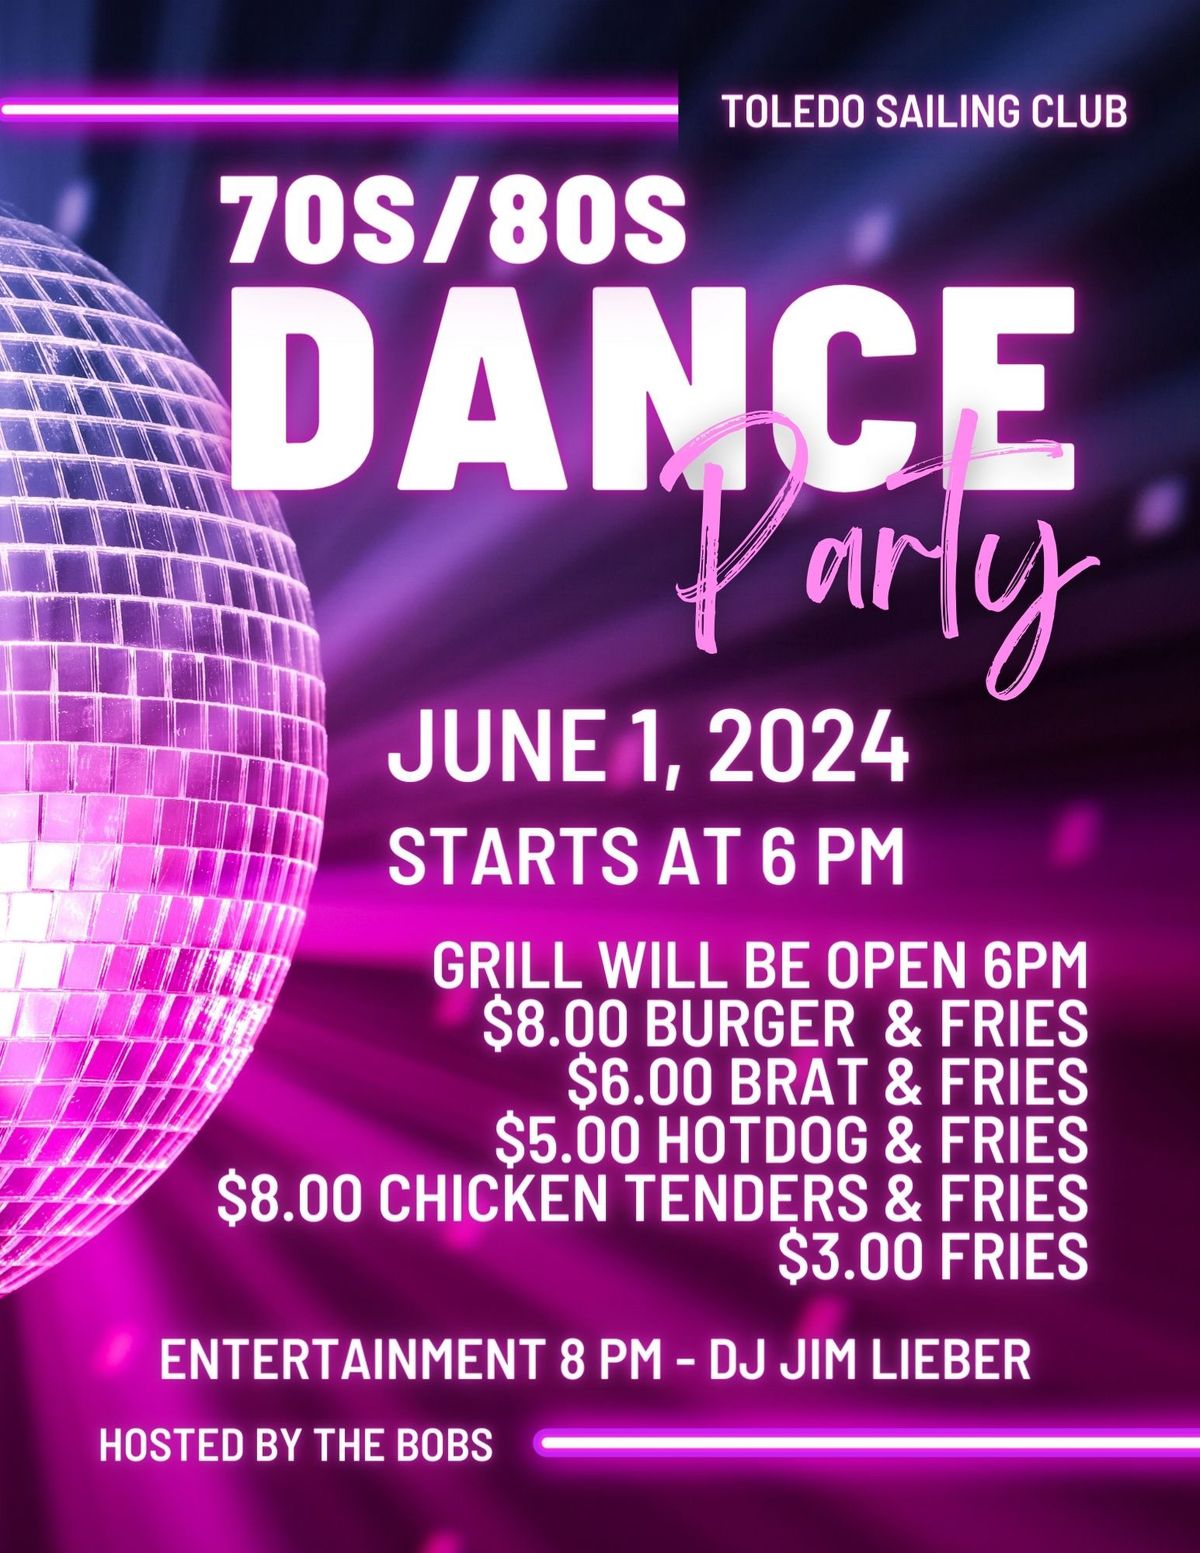 TSC 70s\/80s Dance Party- Not a public event